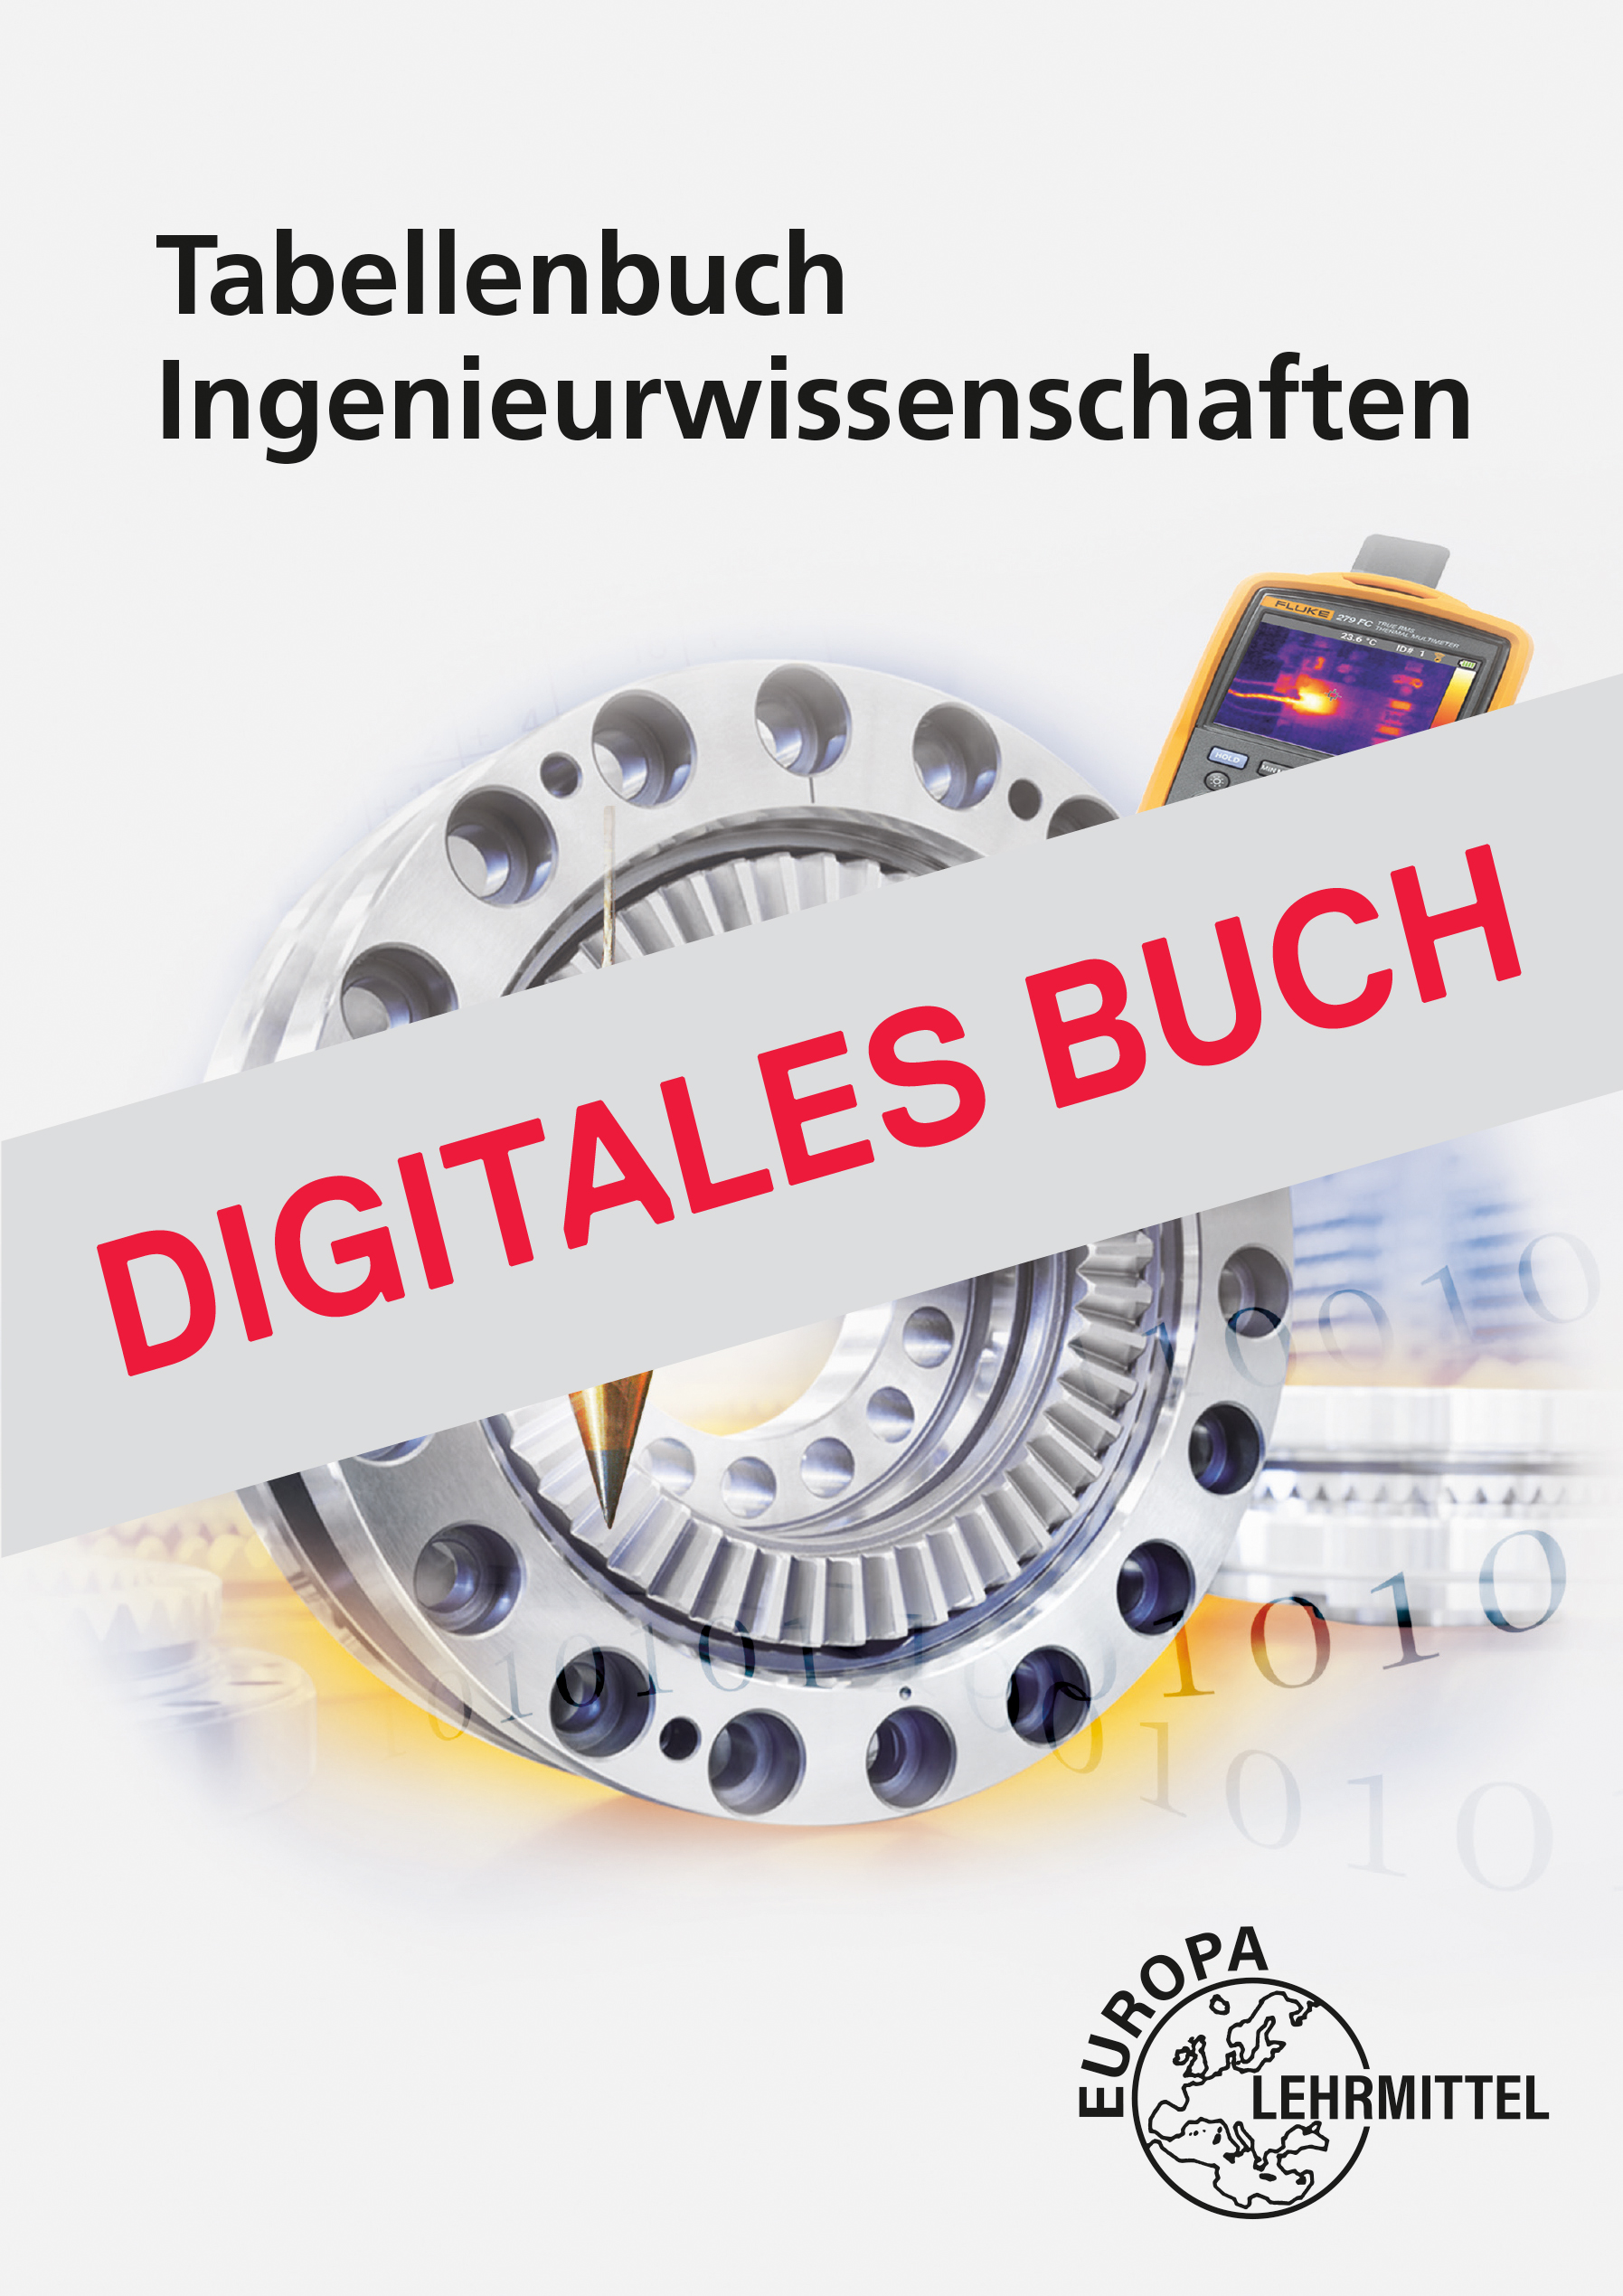 Tabellenbuch Ingenieurwissenschaften - Digitales Buch